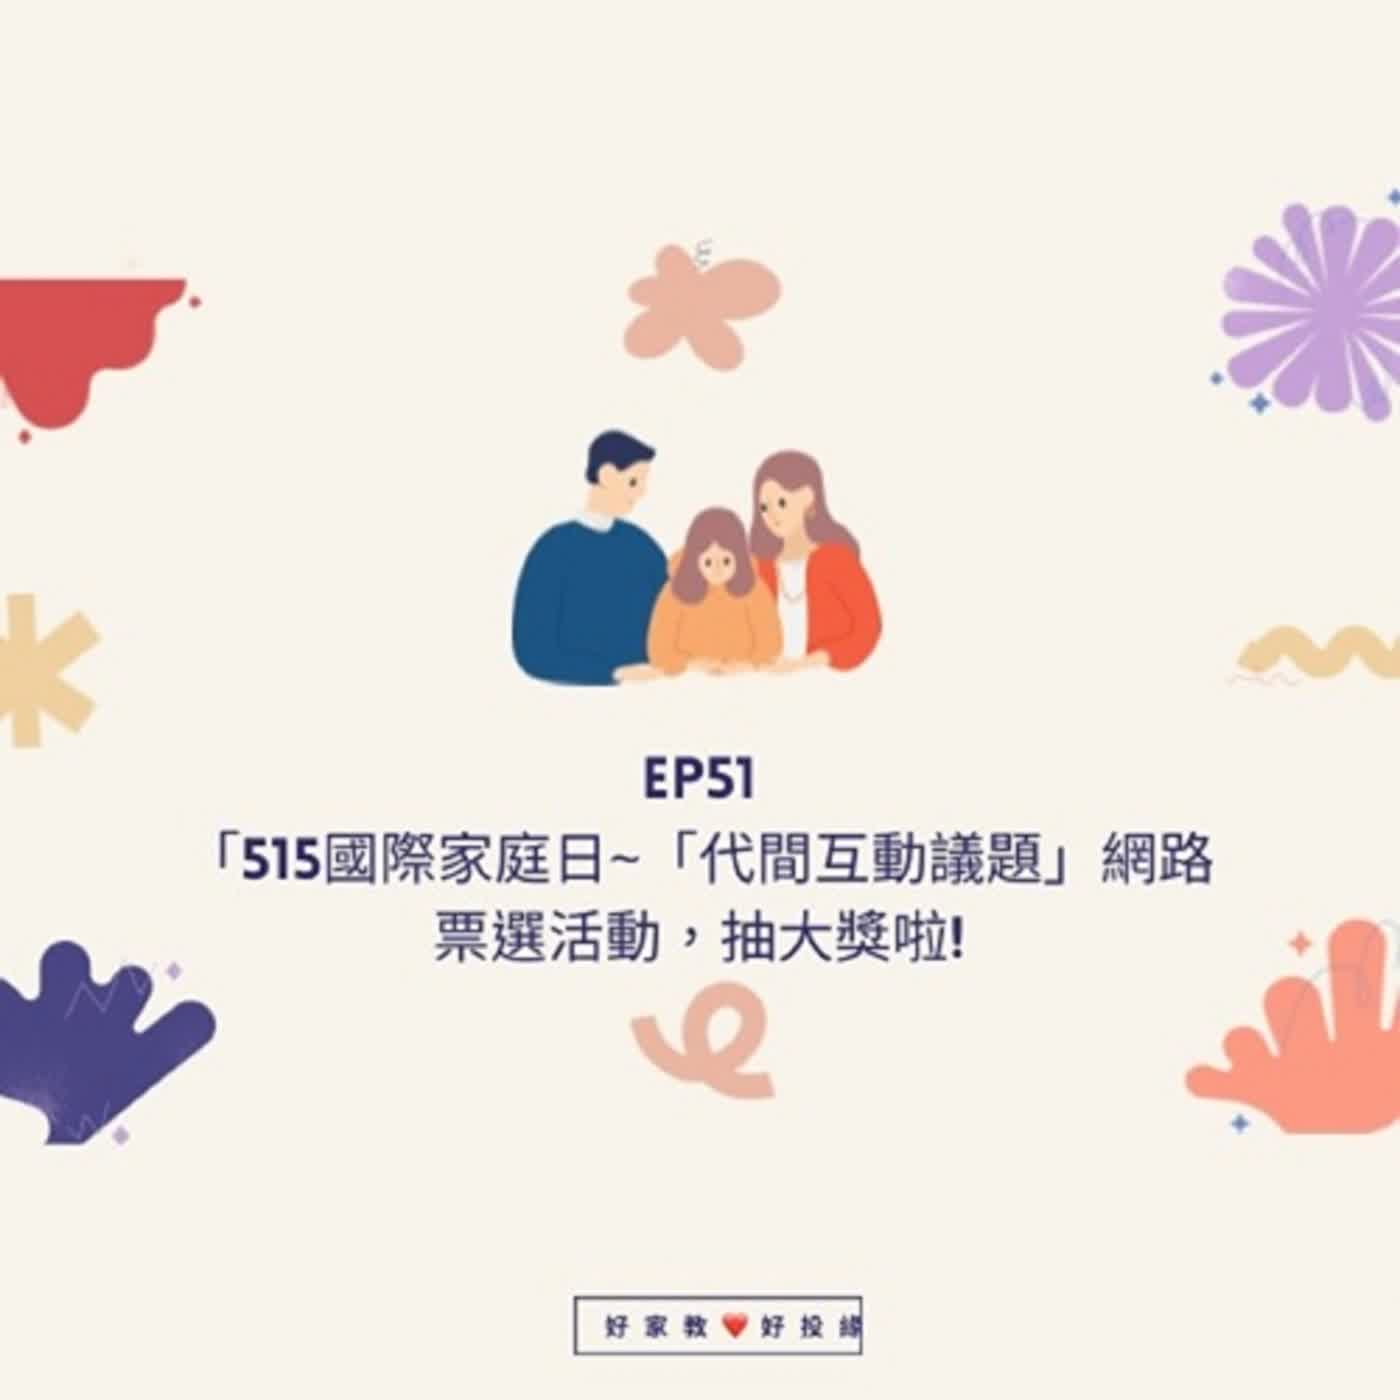 EP51「515國際家庭日｣~「代間互動議題」網路票選活動，抽大獎啦!